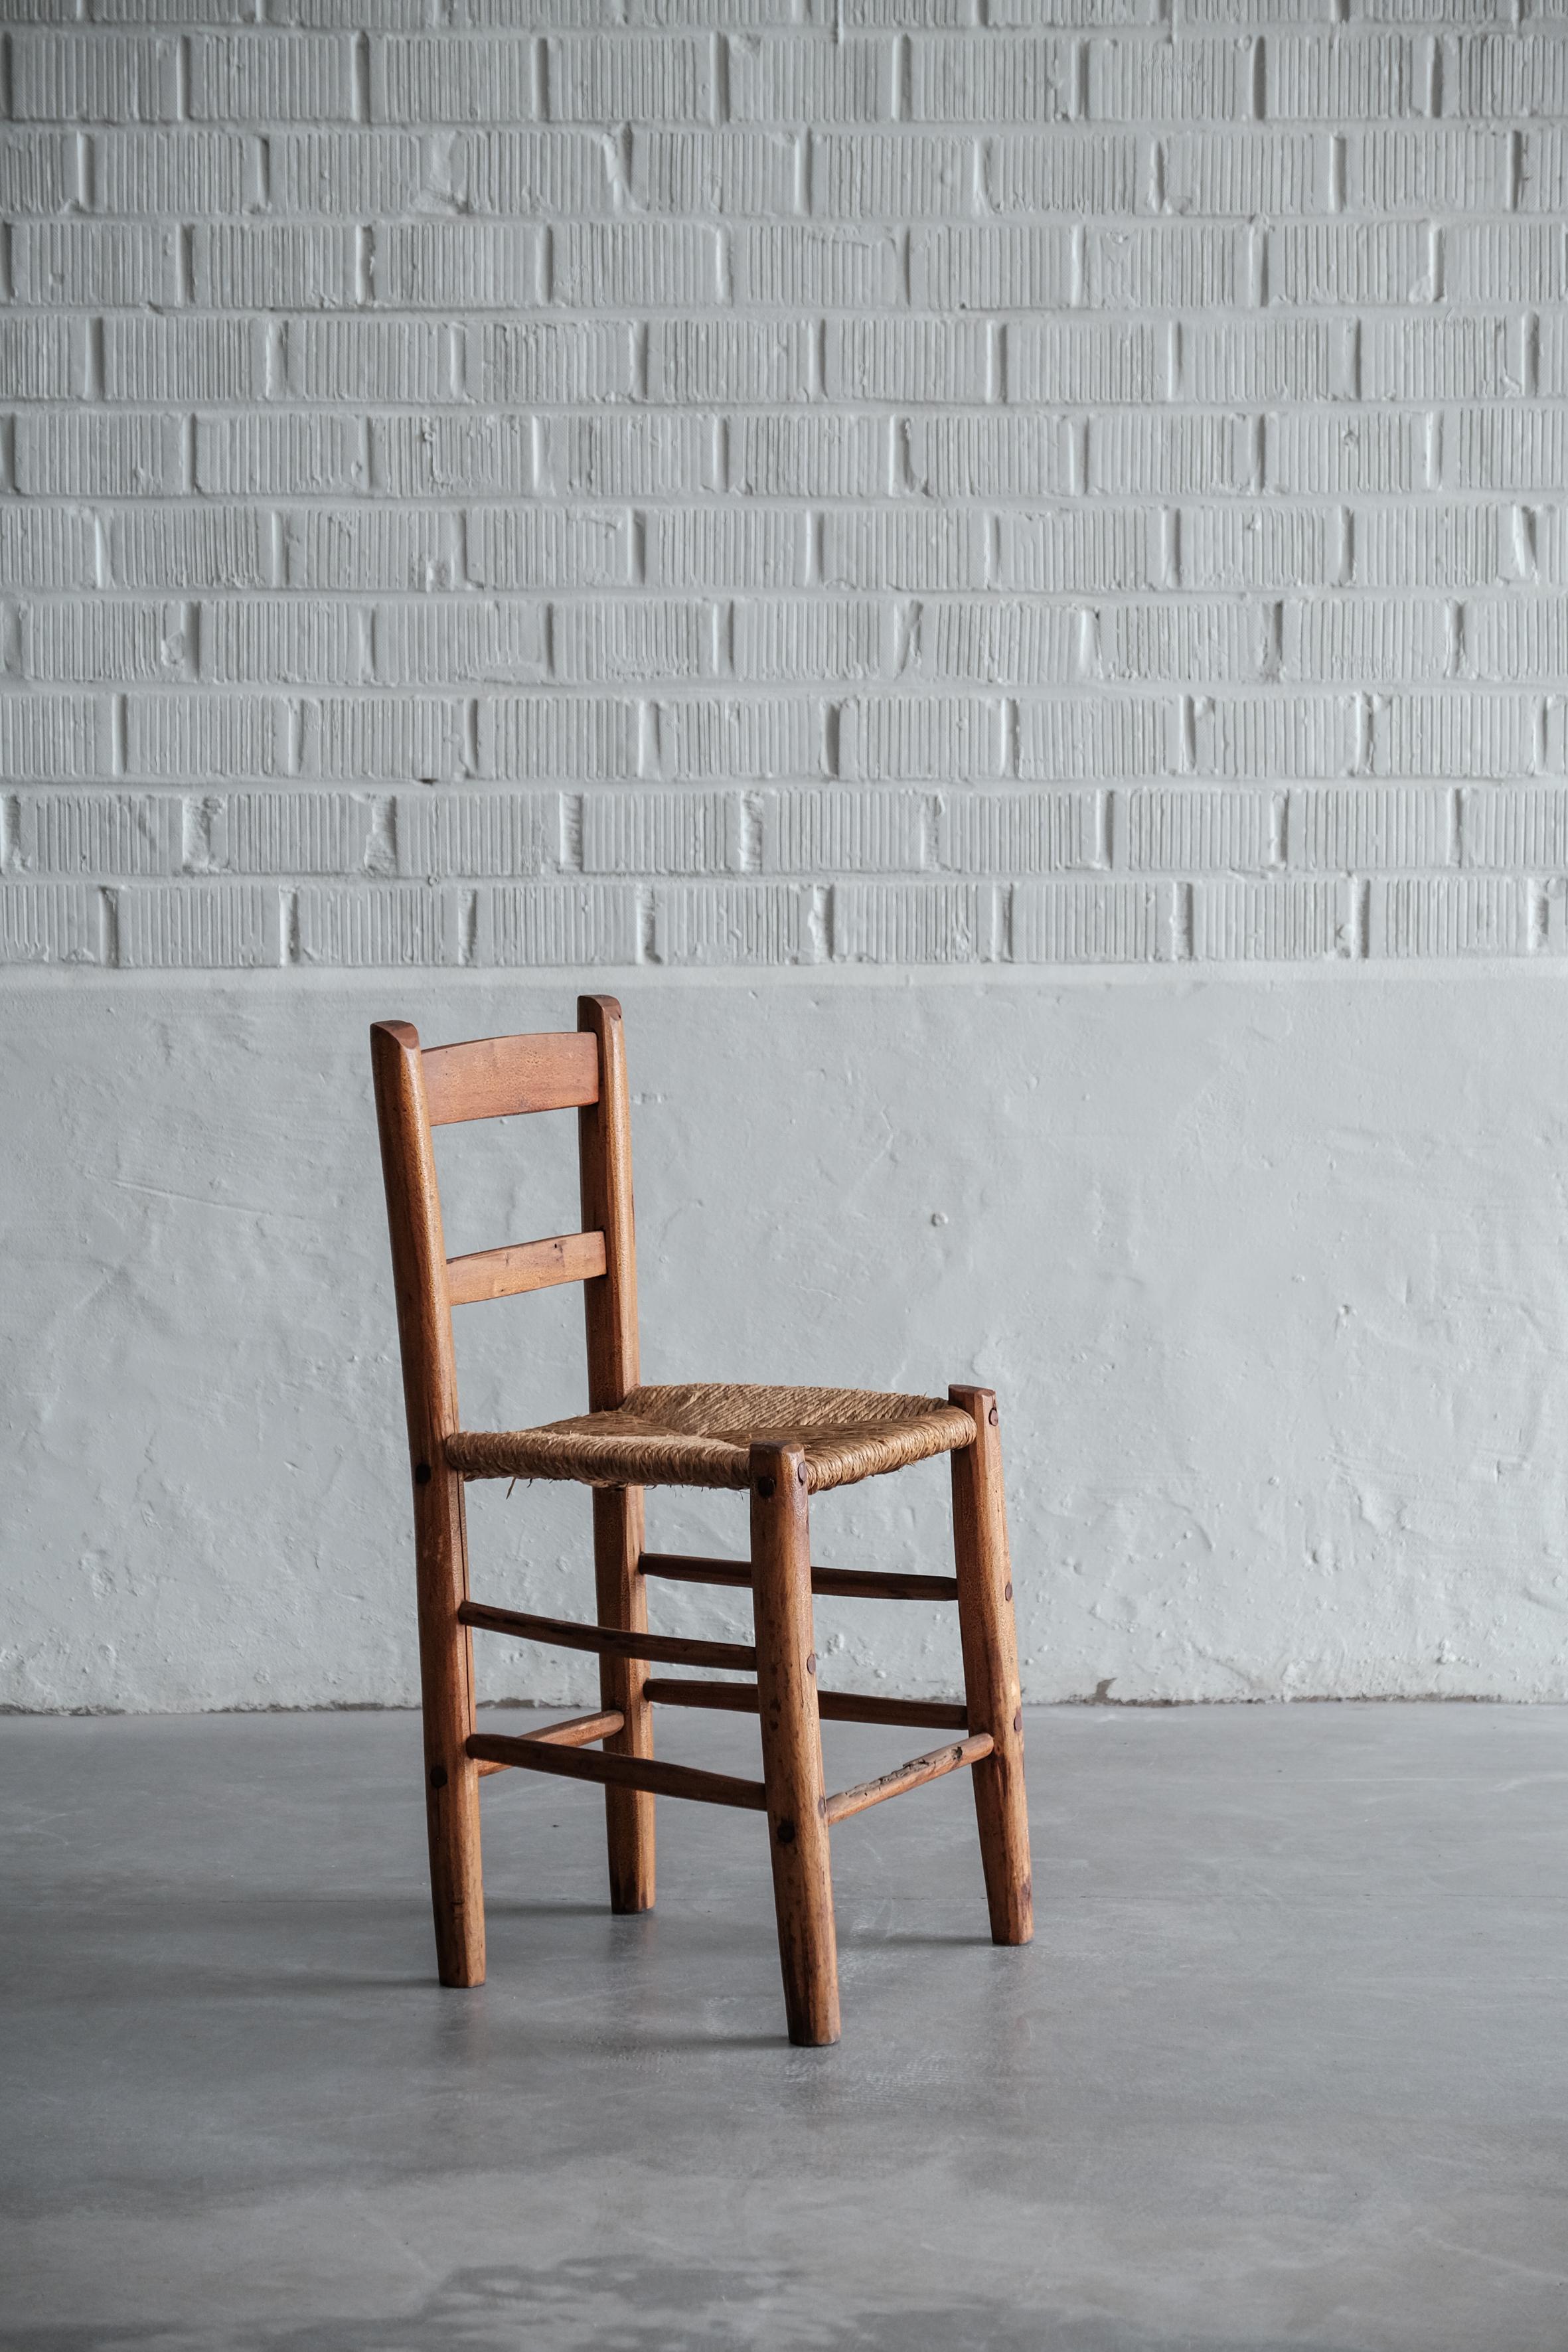 Ensemble de chaises fabriquées à la main dans les Pyrénées françaises en bois et en jonc, années soixante-dix. 

Chaque chaise est unique. 

Il manque une barre verticale en bois à l'une des chaises (voir photos 6), mais il n'y a pas de problème de